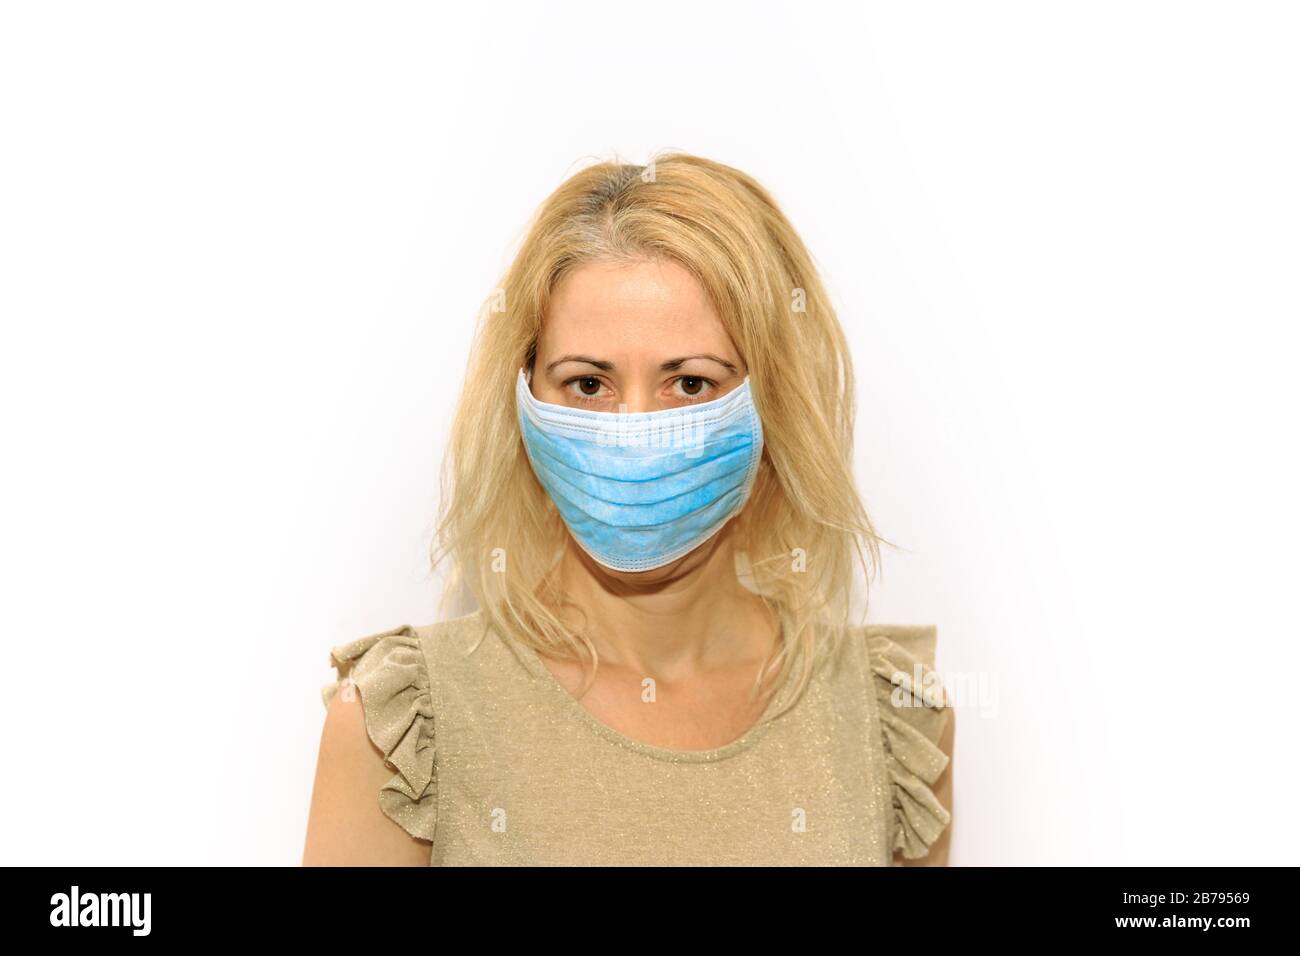 Vorderansicht eines blonden Mädchens mit einer sanitären Maske auf weißem Hintergrund isoliert. Konzept des epidemischen Ausbruchs, Quarantäne für die öffentliche Gesundheitsversorgung und Stockfoto